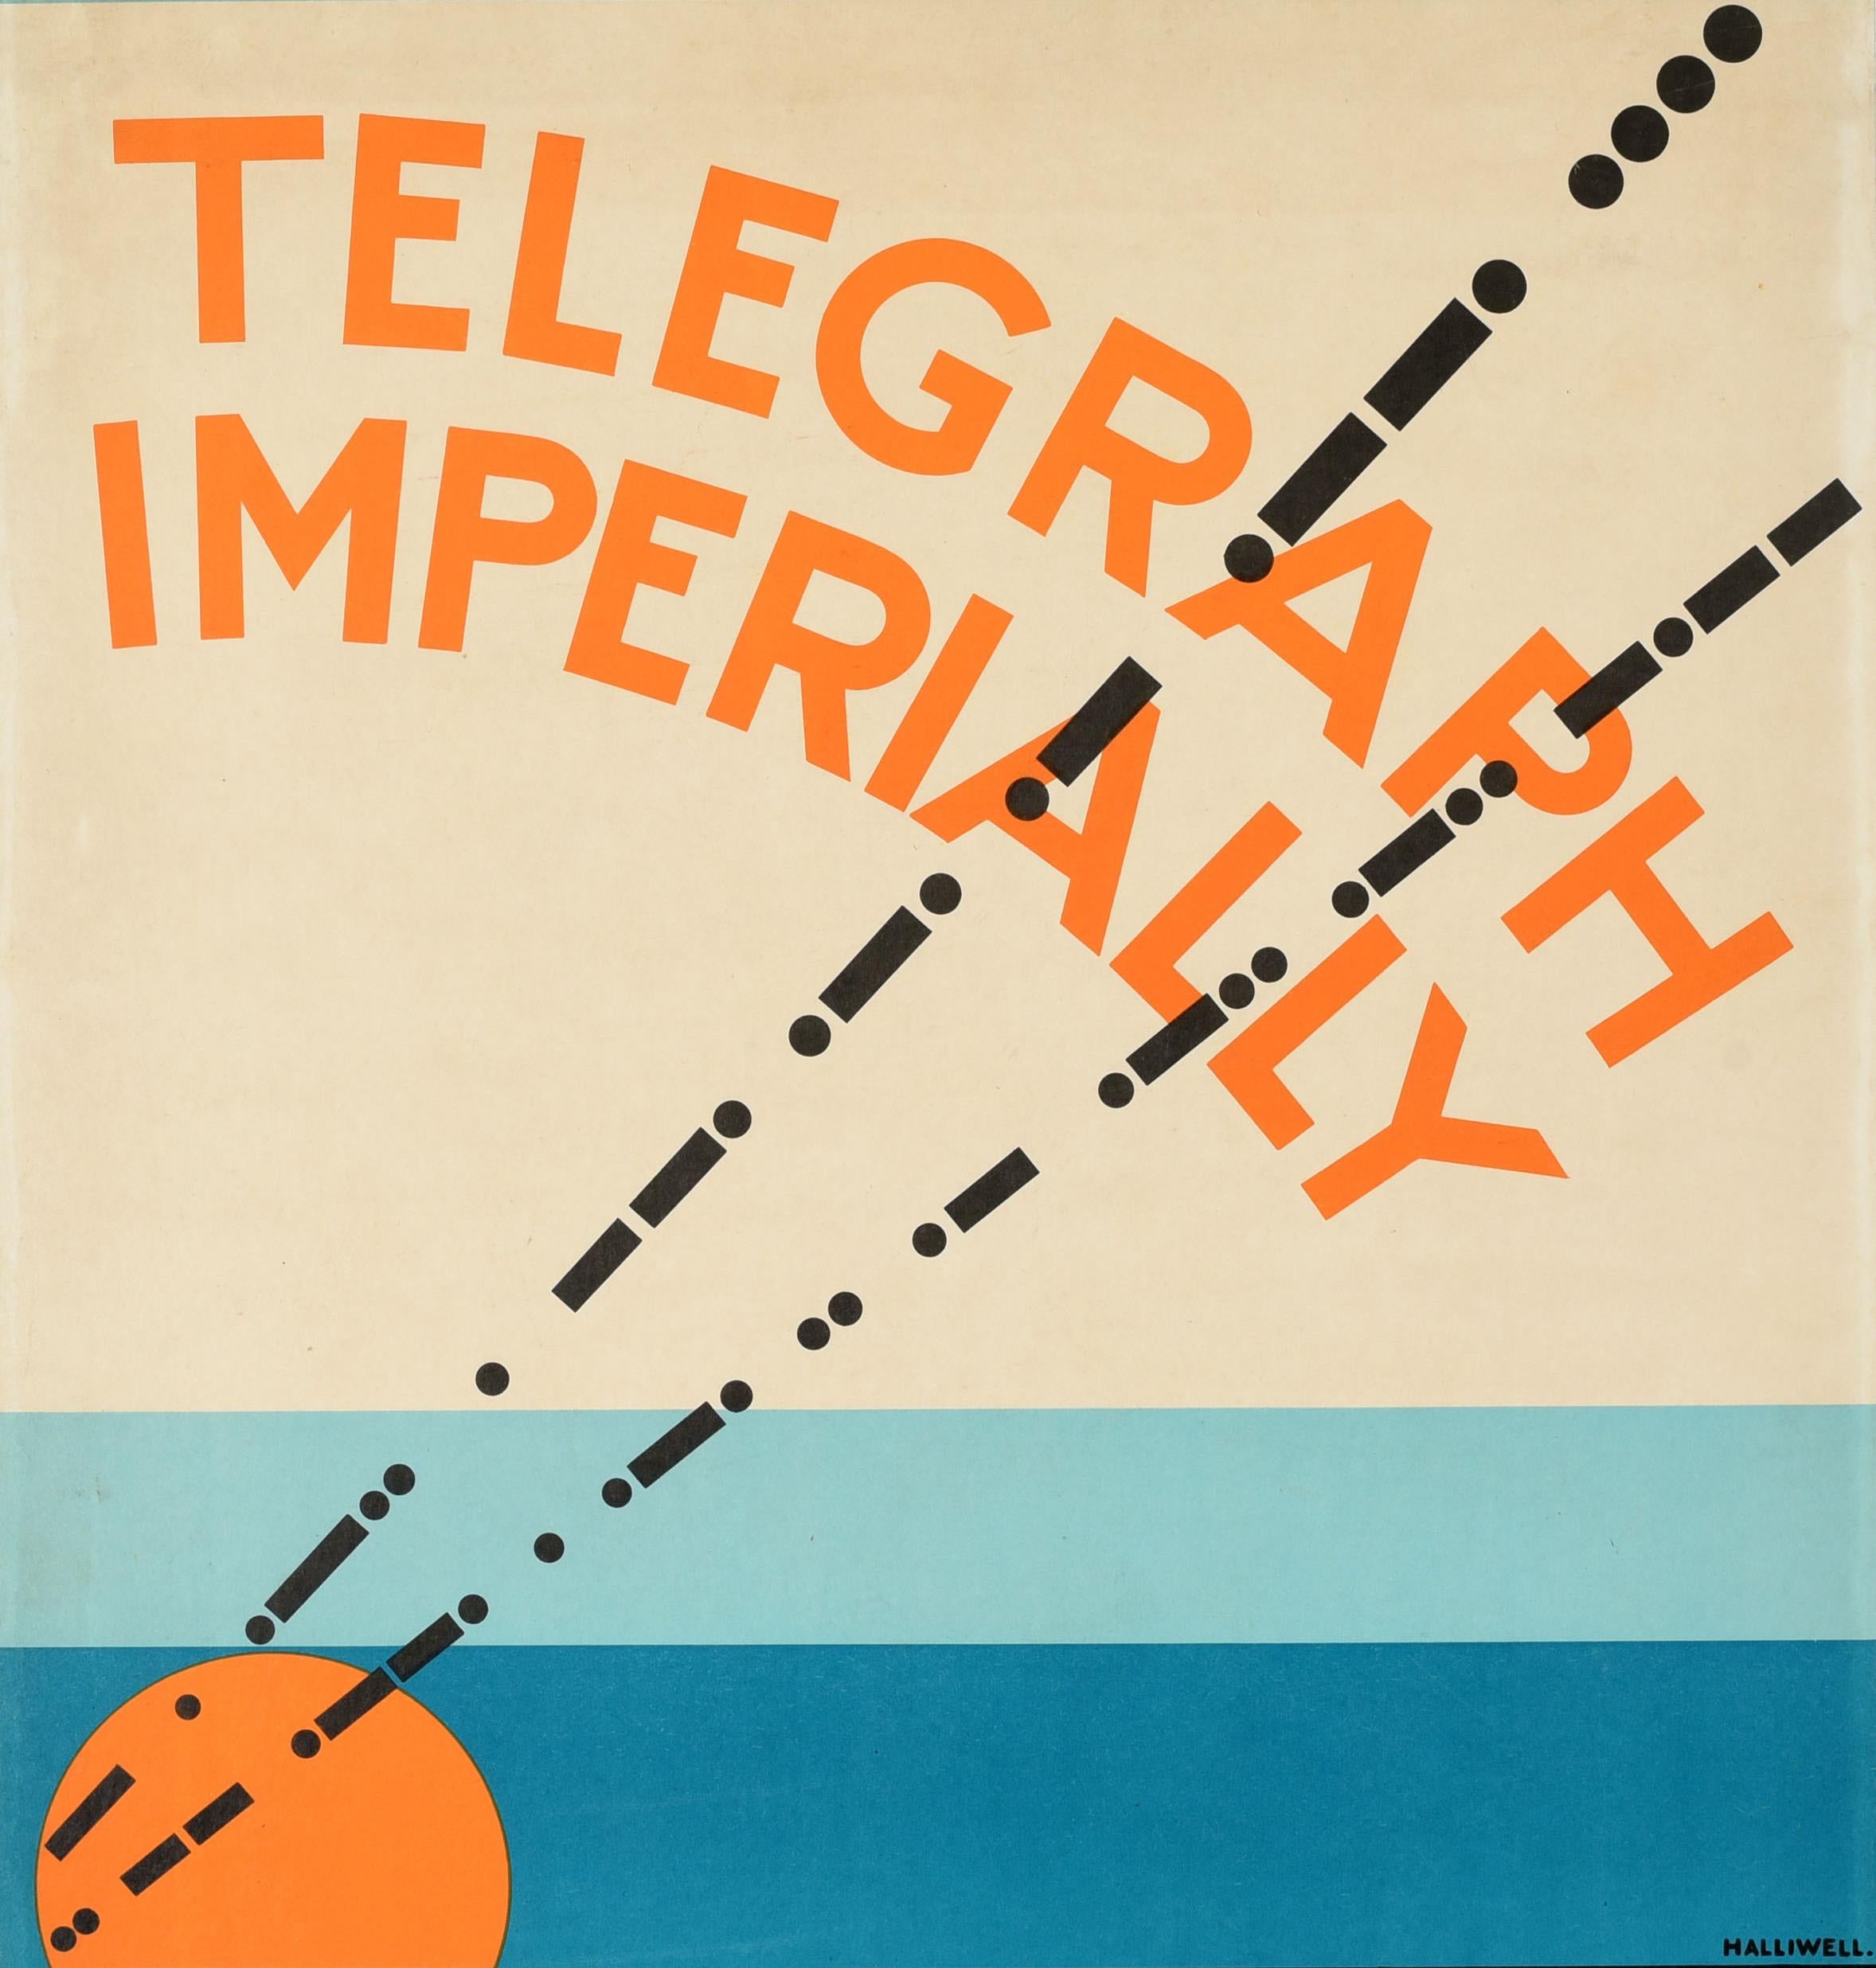 Affiche publicitaire originale d'époque - Telegraph Imperially via Imperial Eastern Empiradio Marconi - présentant un superbe graphisme représentant un code morse s'élevant en diagonale à partir d'un soleil orange et bleu à l'horizon, le titre